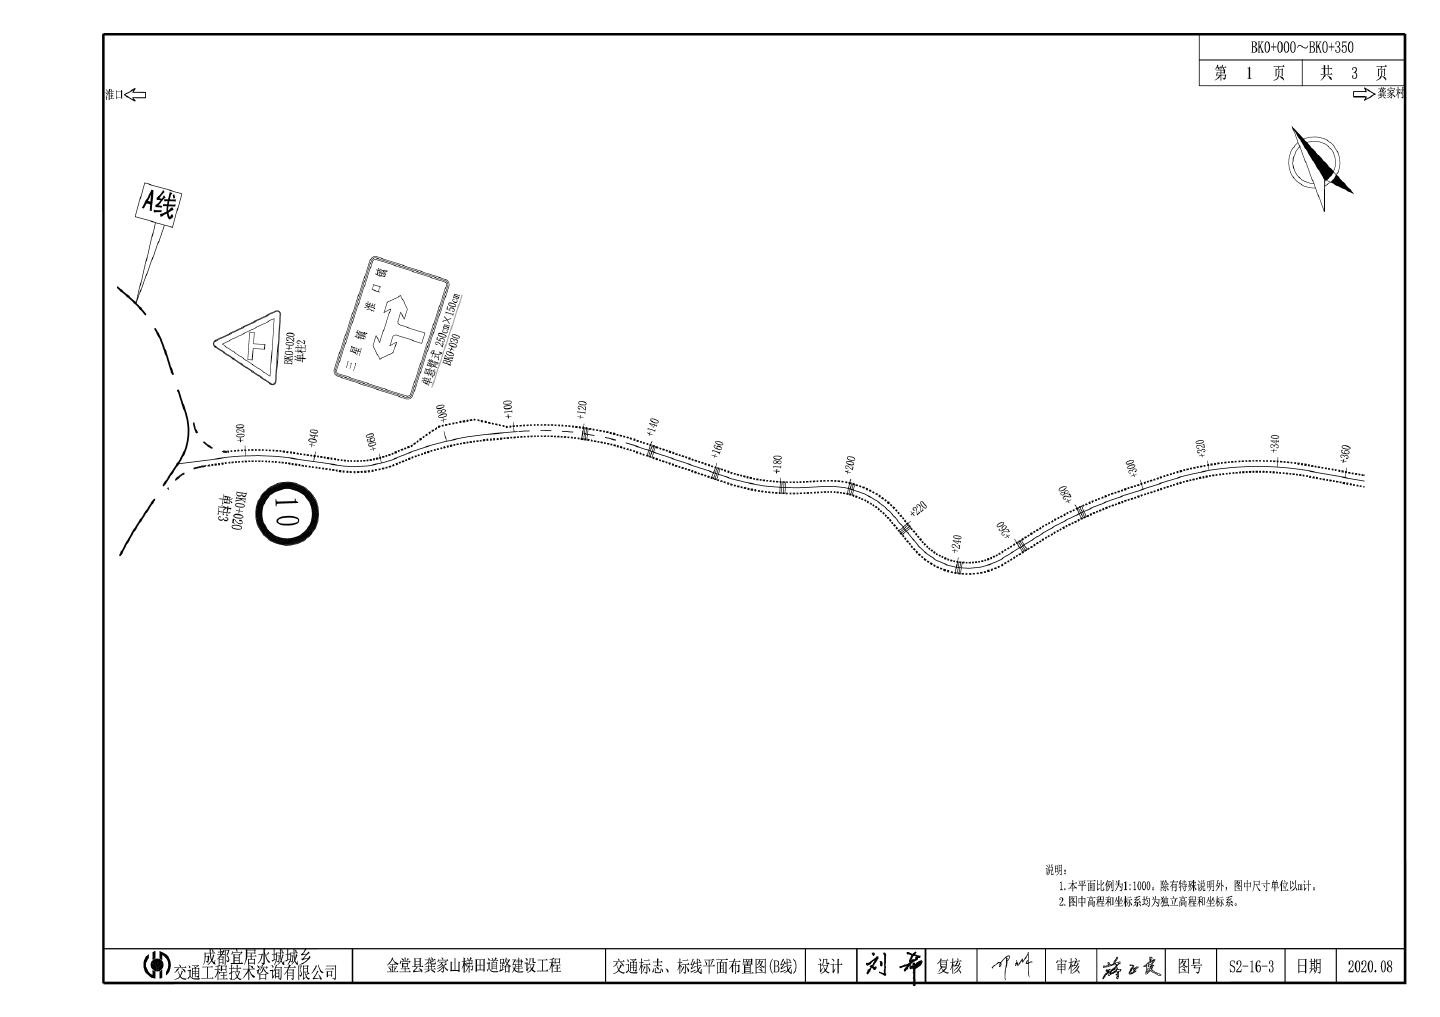 S2-16-3B线交通标志及标线平面布置图